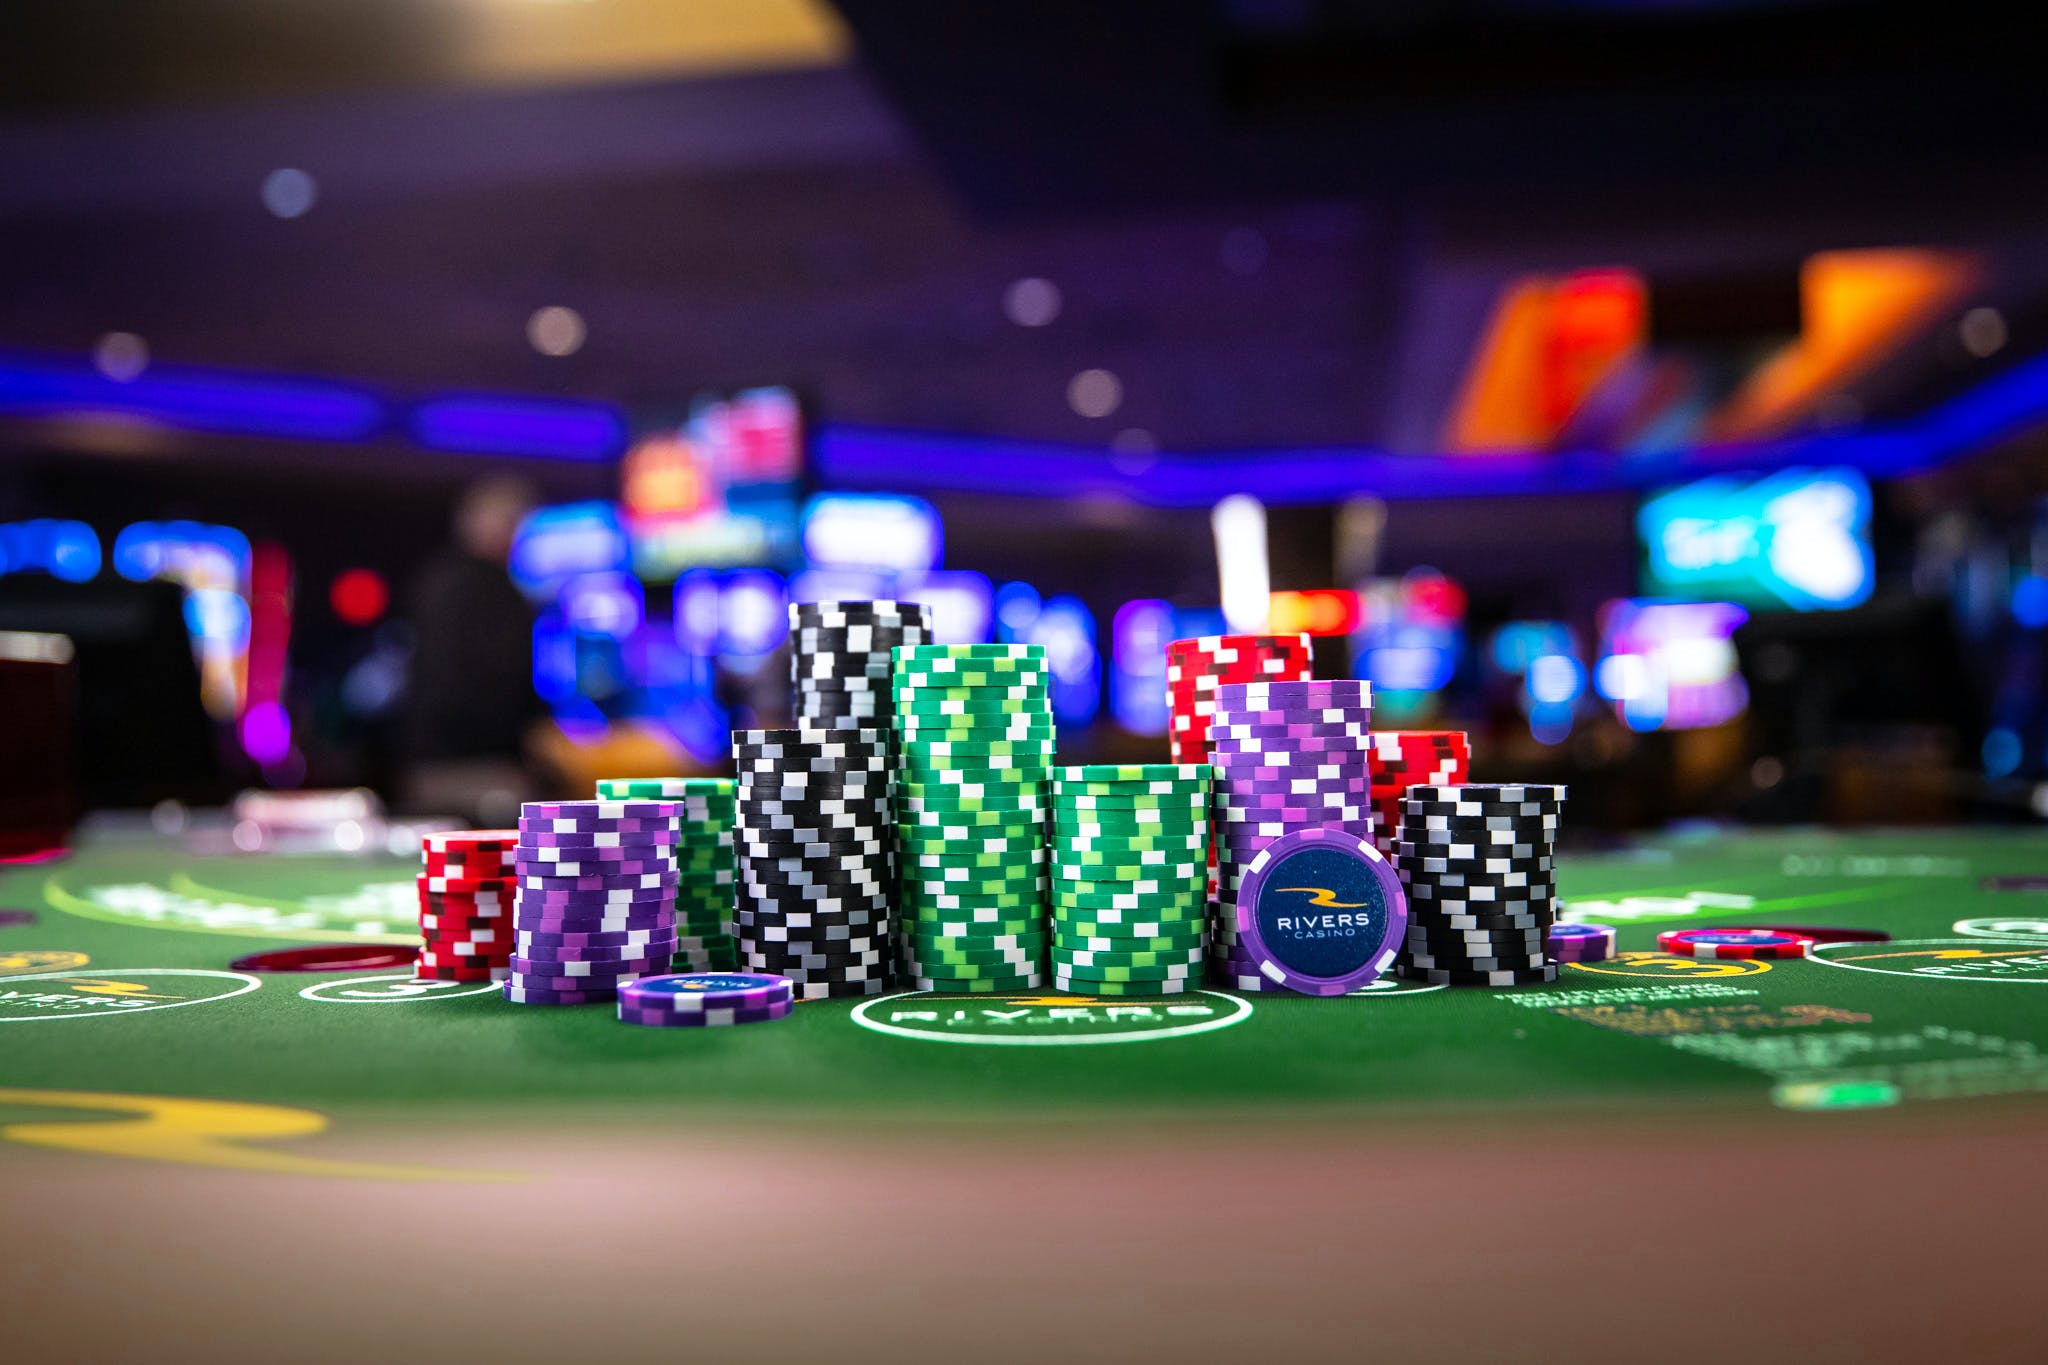 Gibt es eine Beziehung zwischen Glück im Casino und dem gewinnenden Slots-Maschinen?